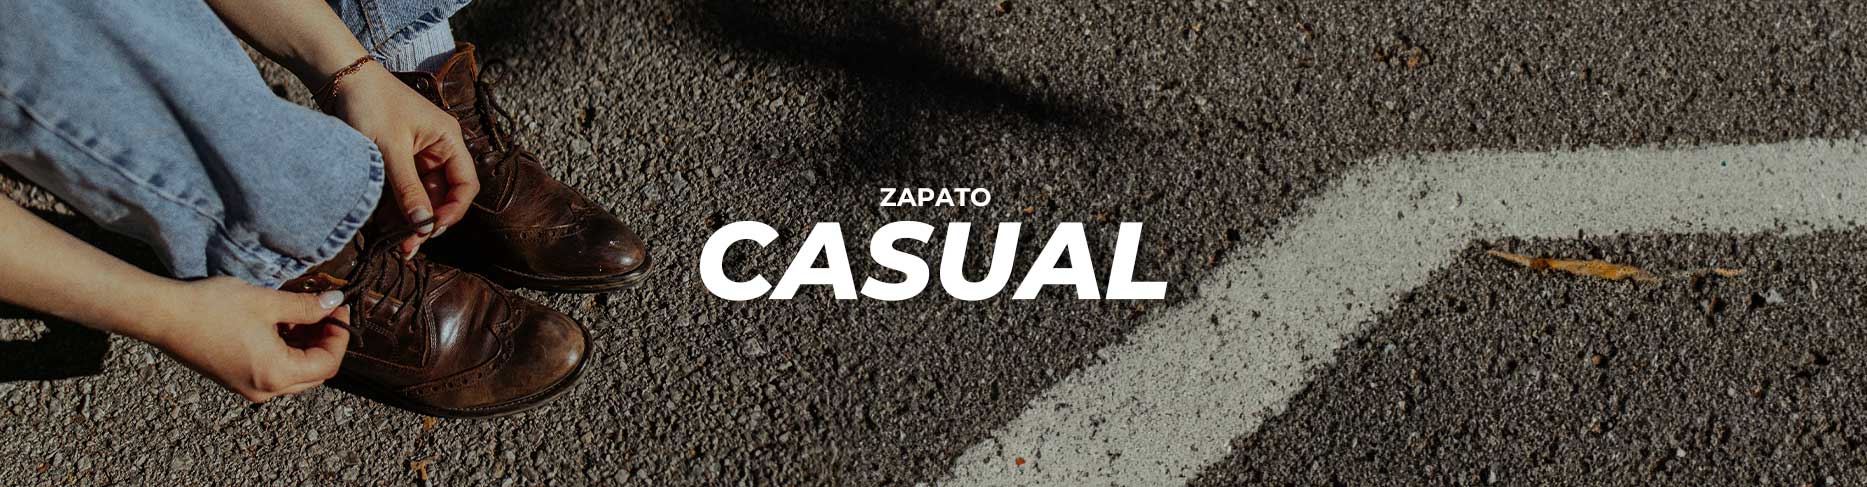 ZAPATO CASUAL